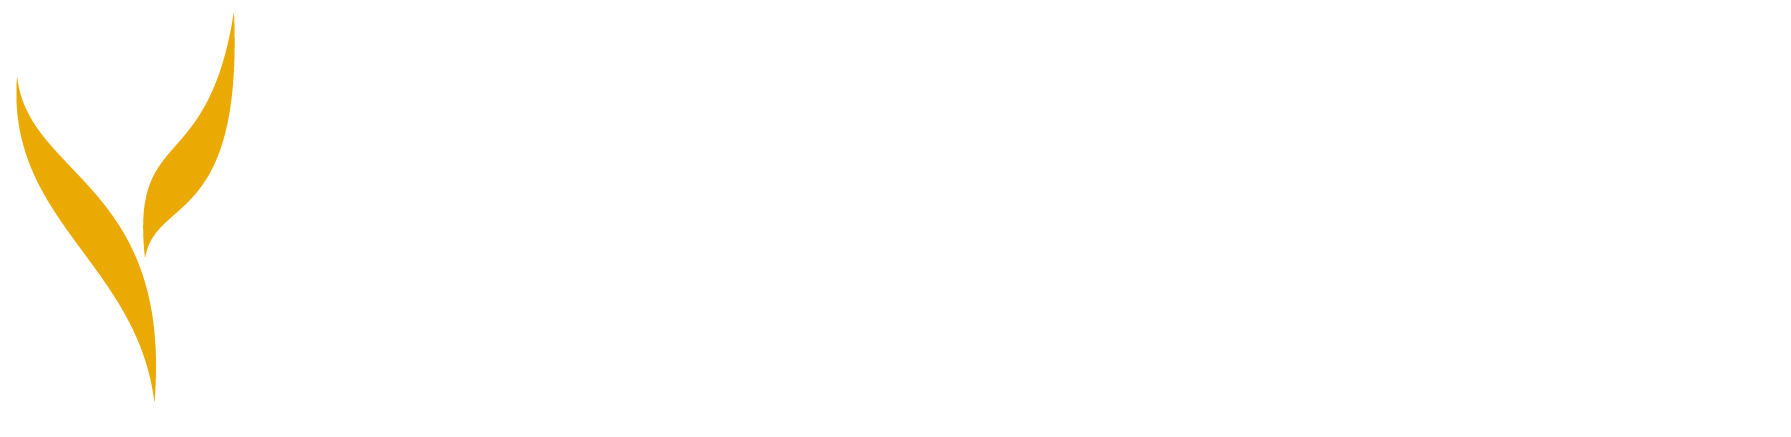 Ochsner Performance Training Logo